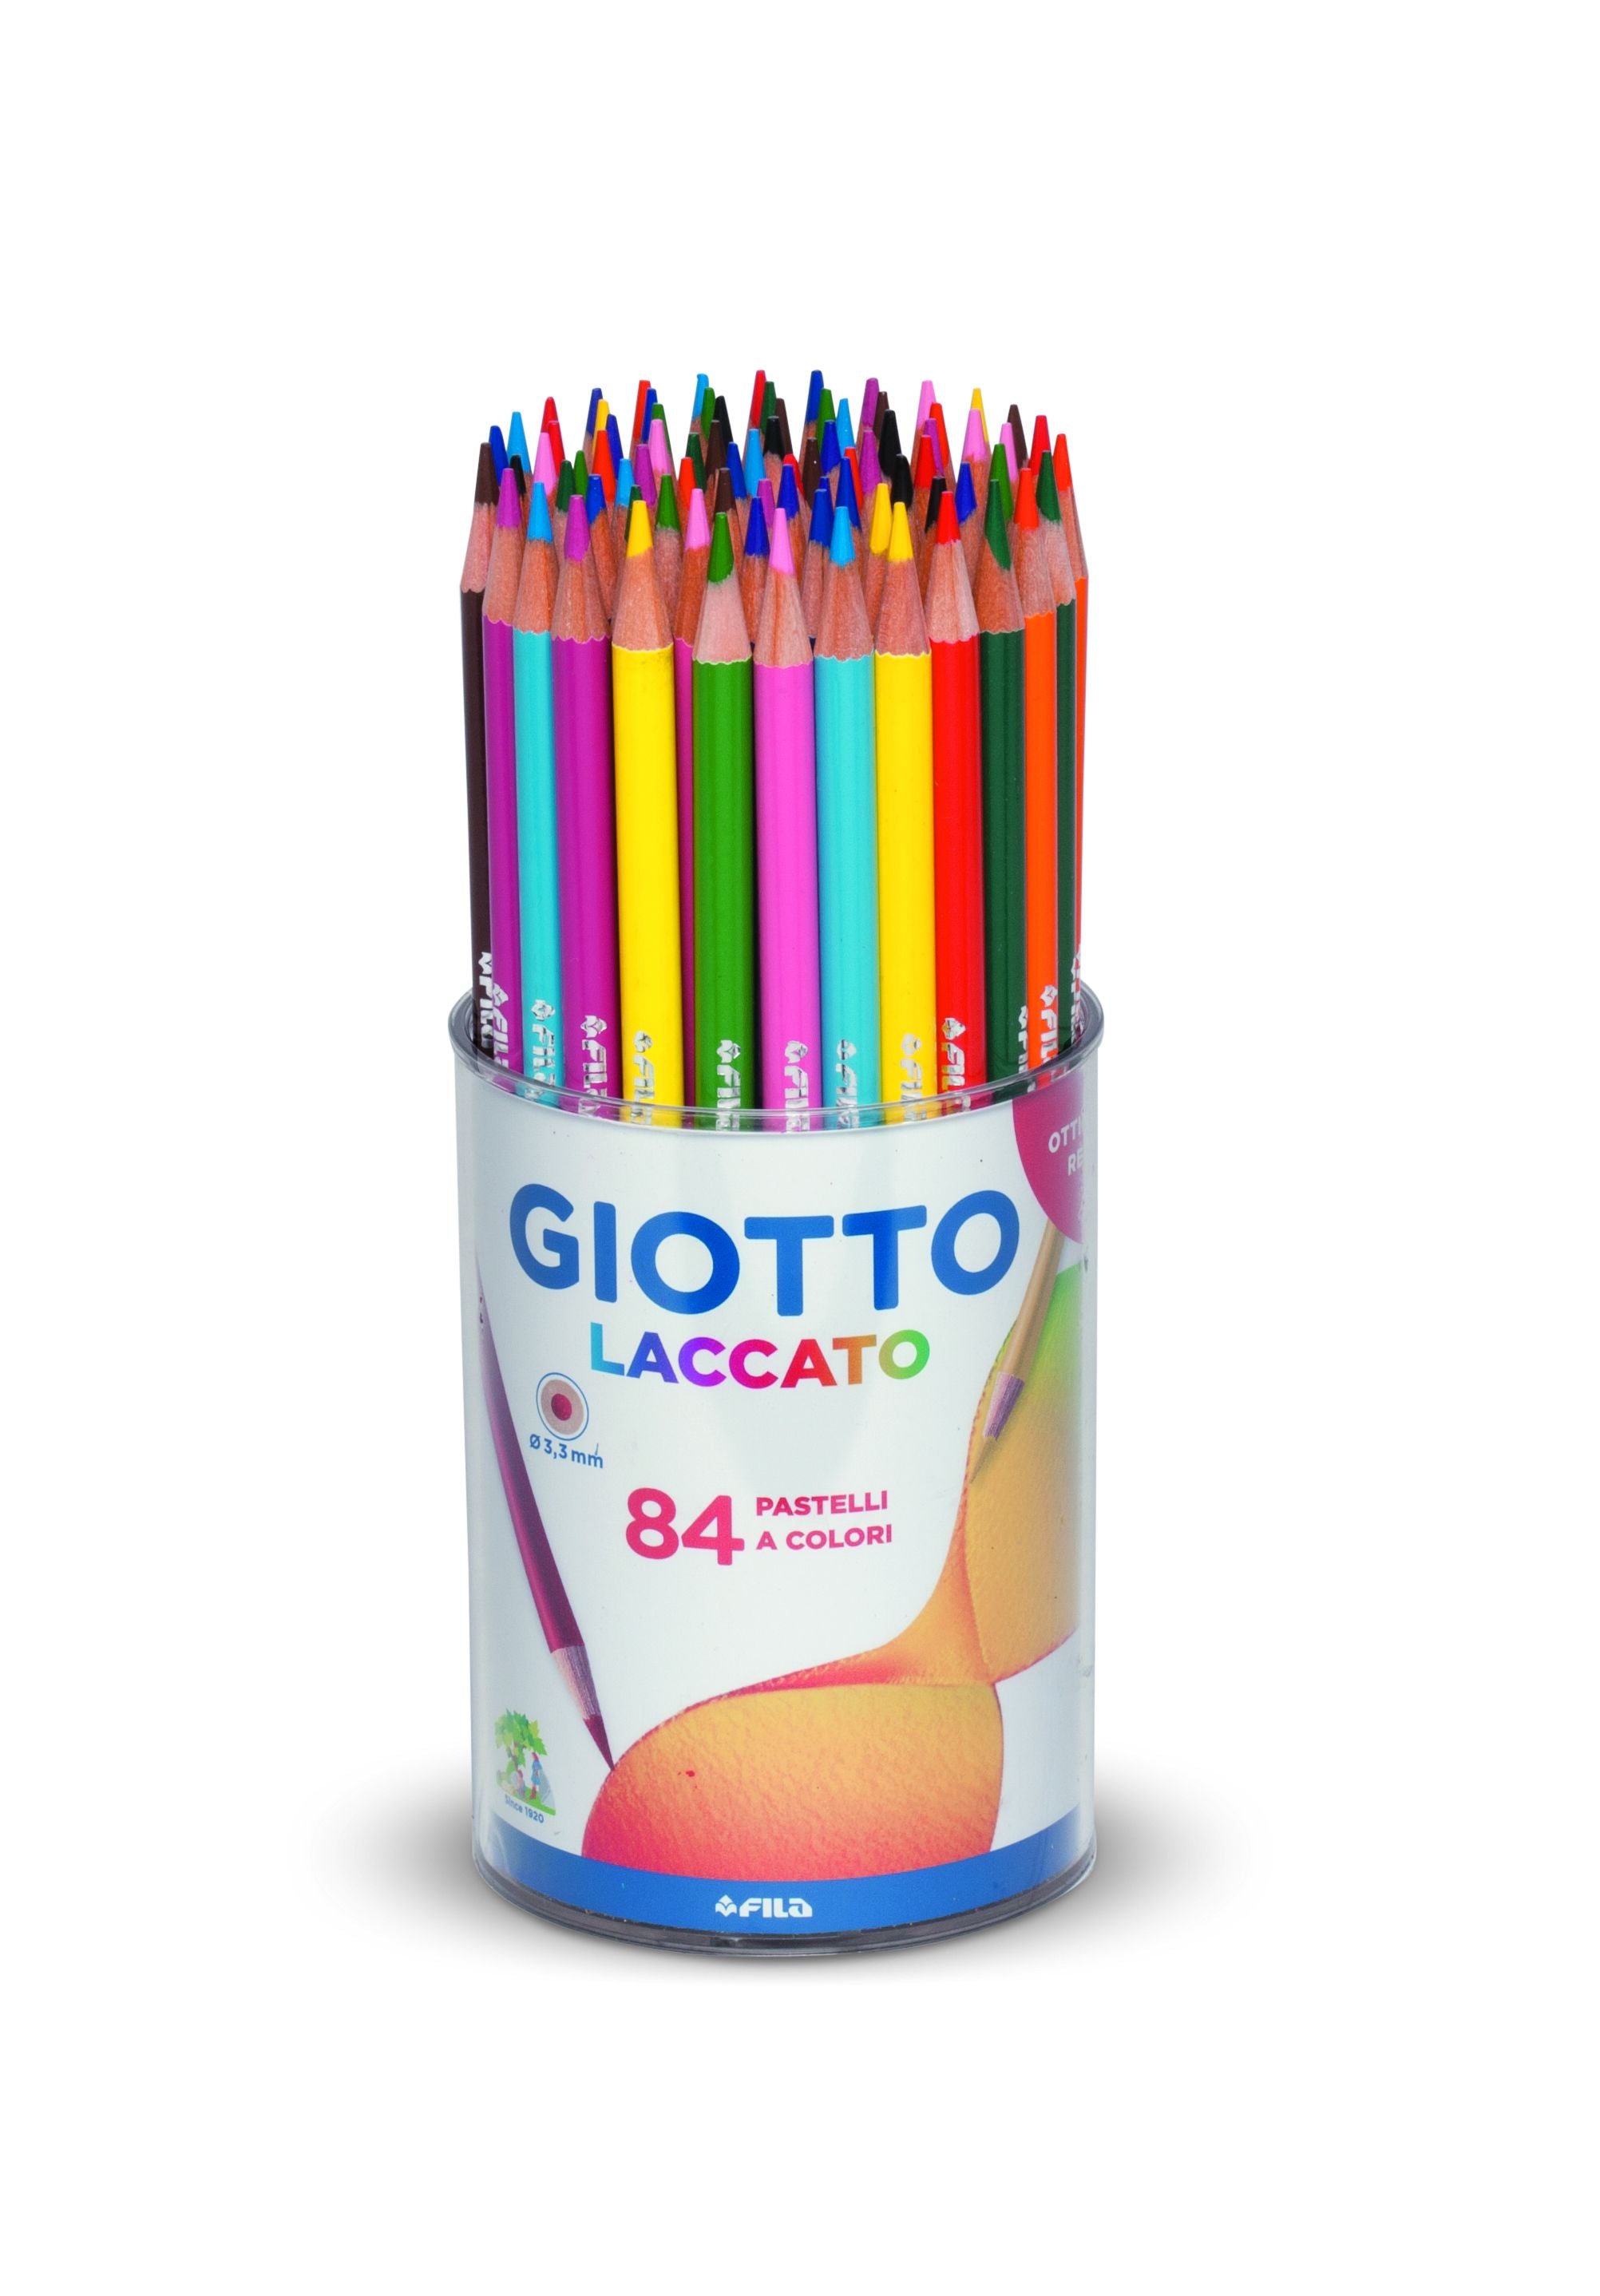 Pastelli Giotto Laccato 84pz – Centroscuola